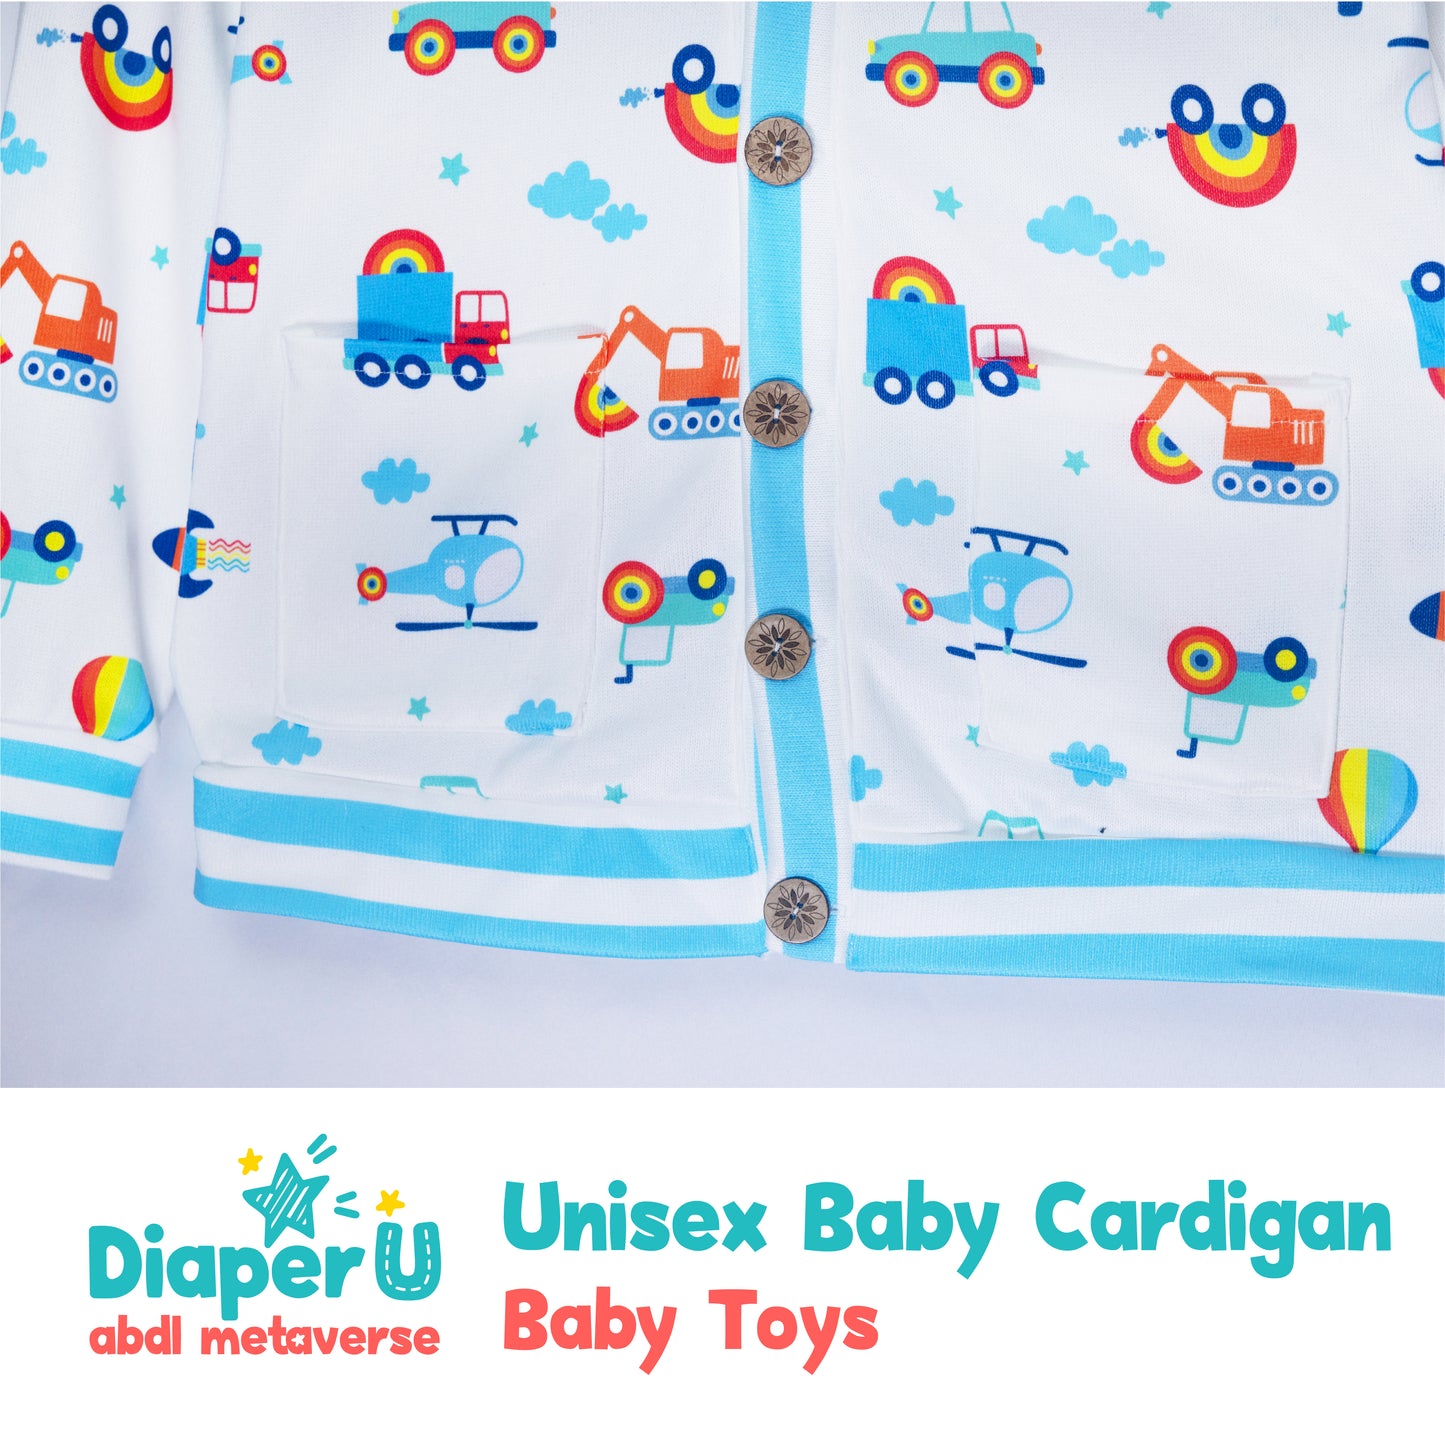 Unisex Baby Cardigan - Baby Toys